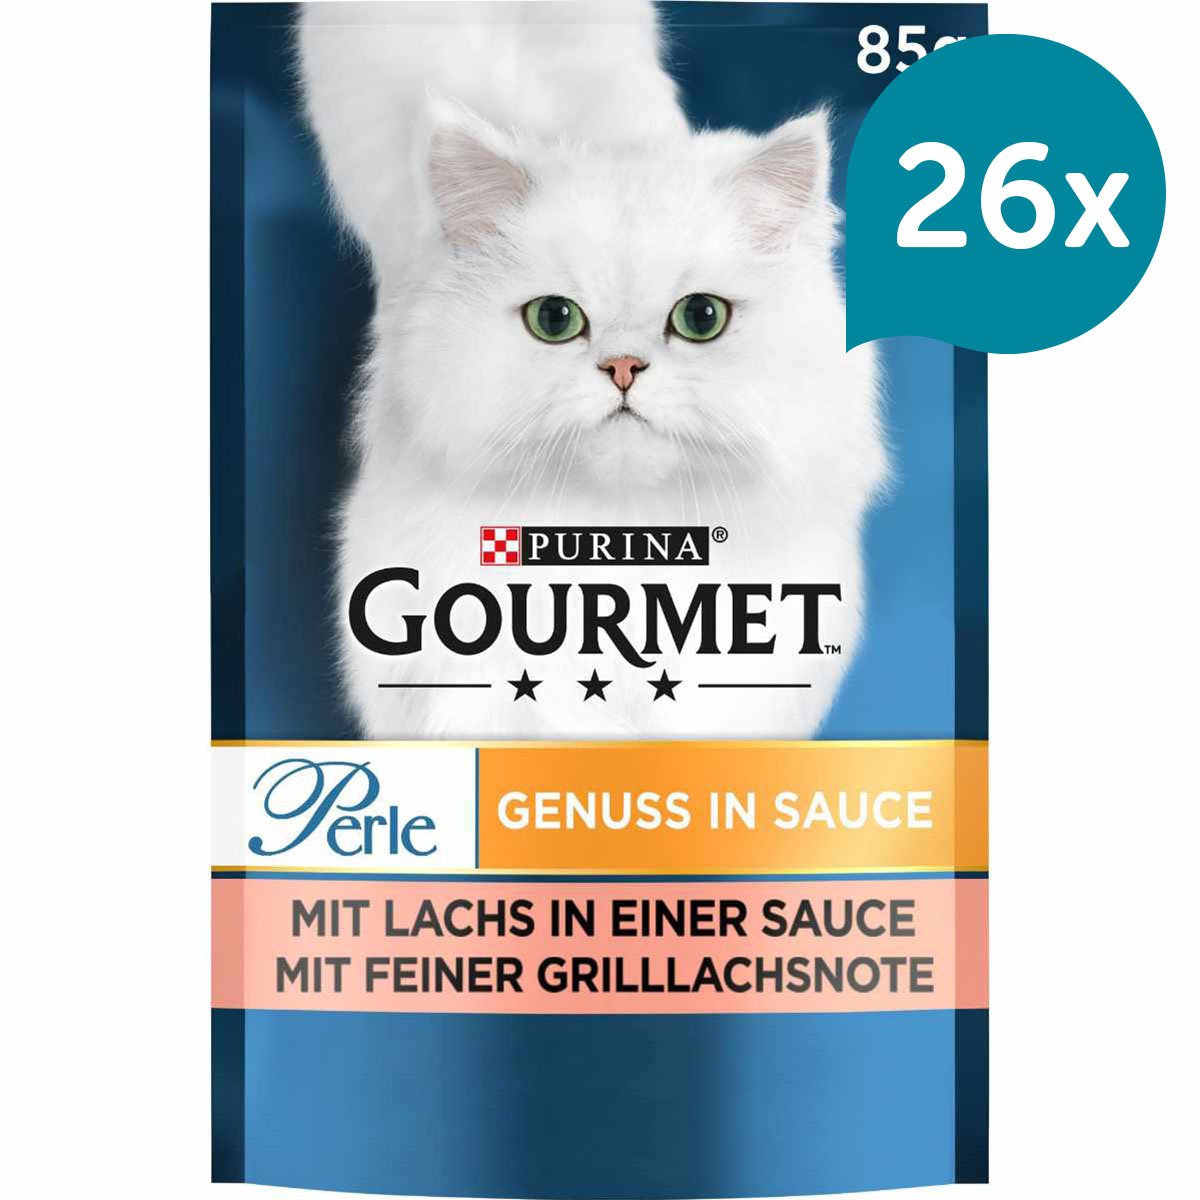 GOURMET Perle Genuss in Sauce mit Lachs 26x85g